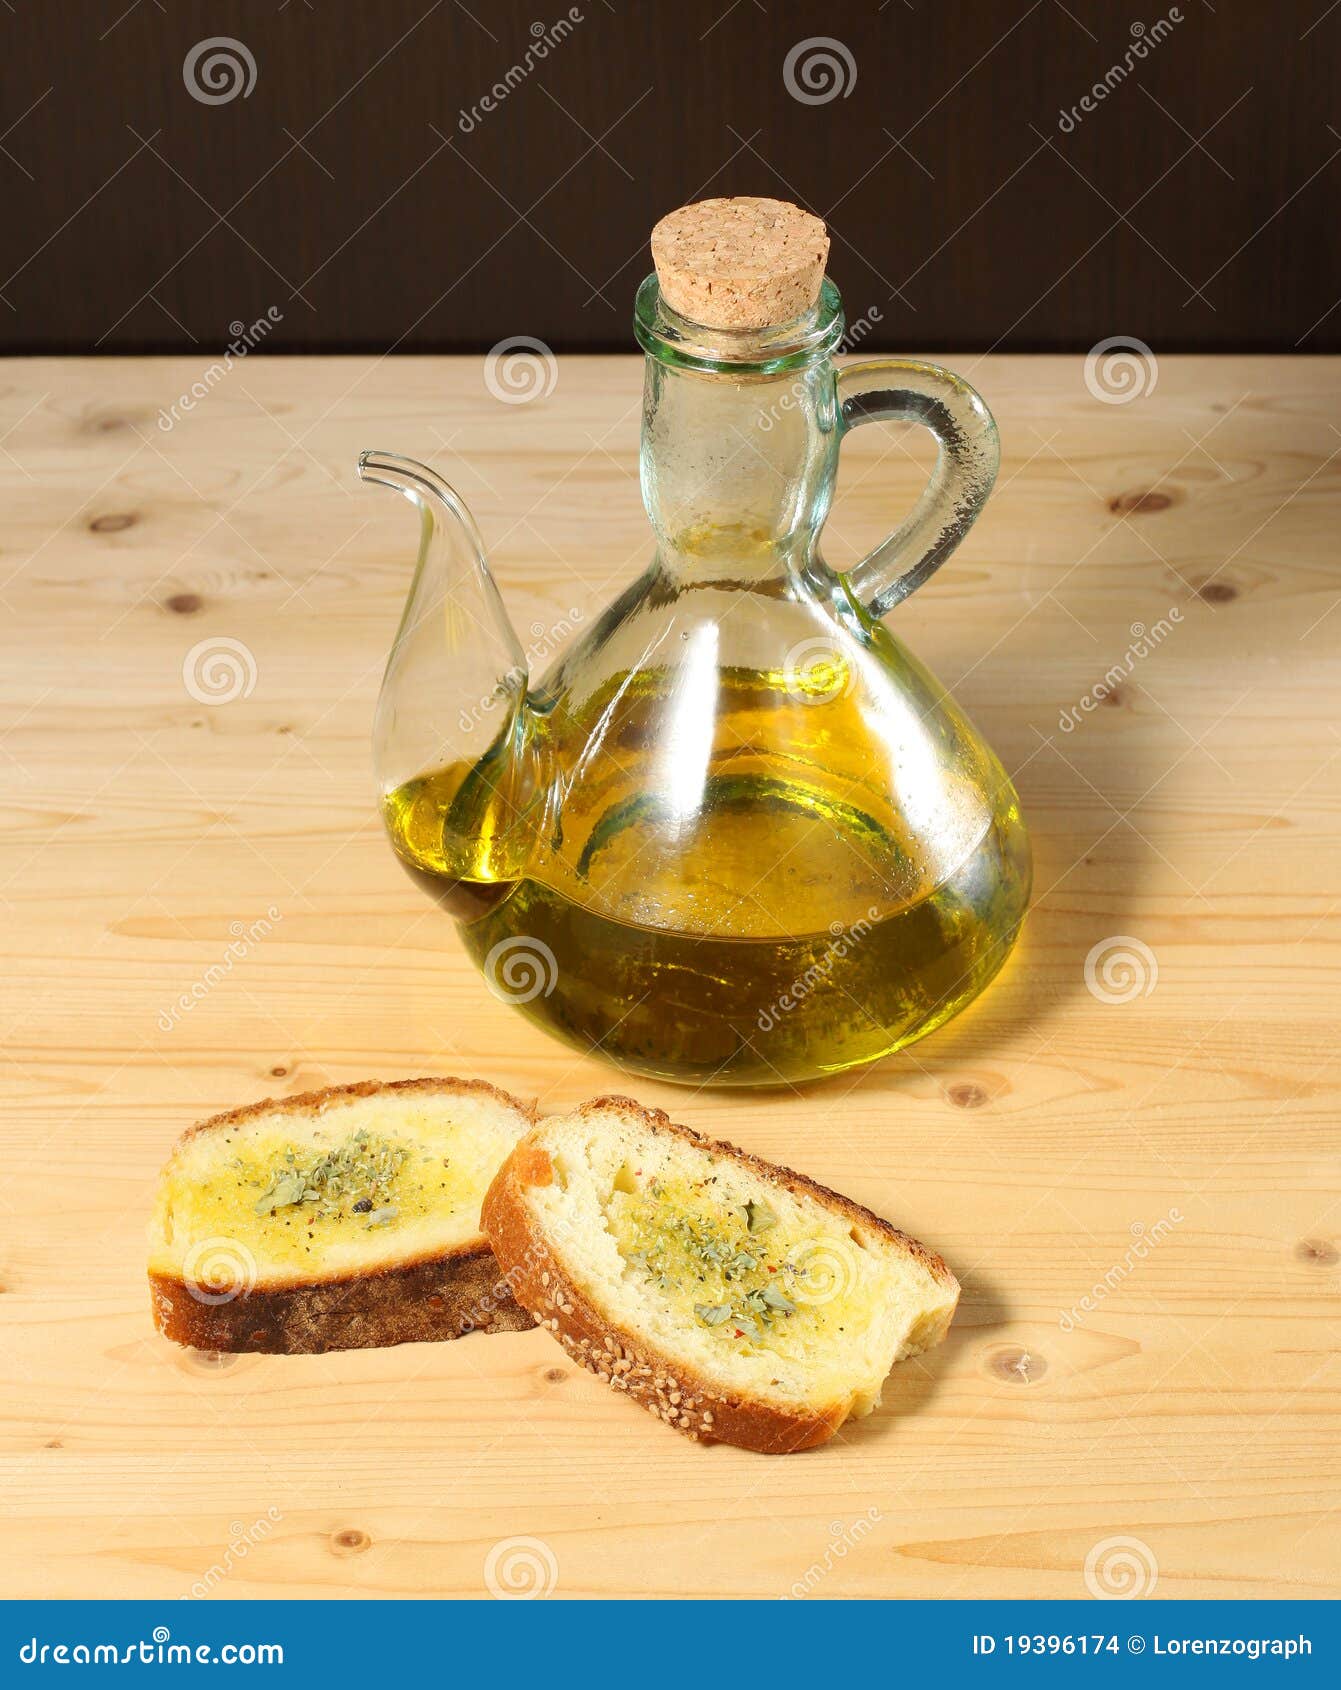 Bread olive oil. Хлеб с оливковым маслом. Хлеб с подсолнечным маслом. Хлеб с подсолнечным маслом и солью. Хлеб политый подсолнечным маслом.